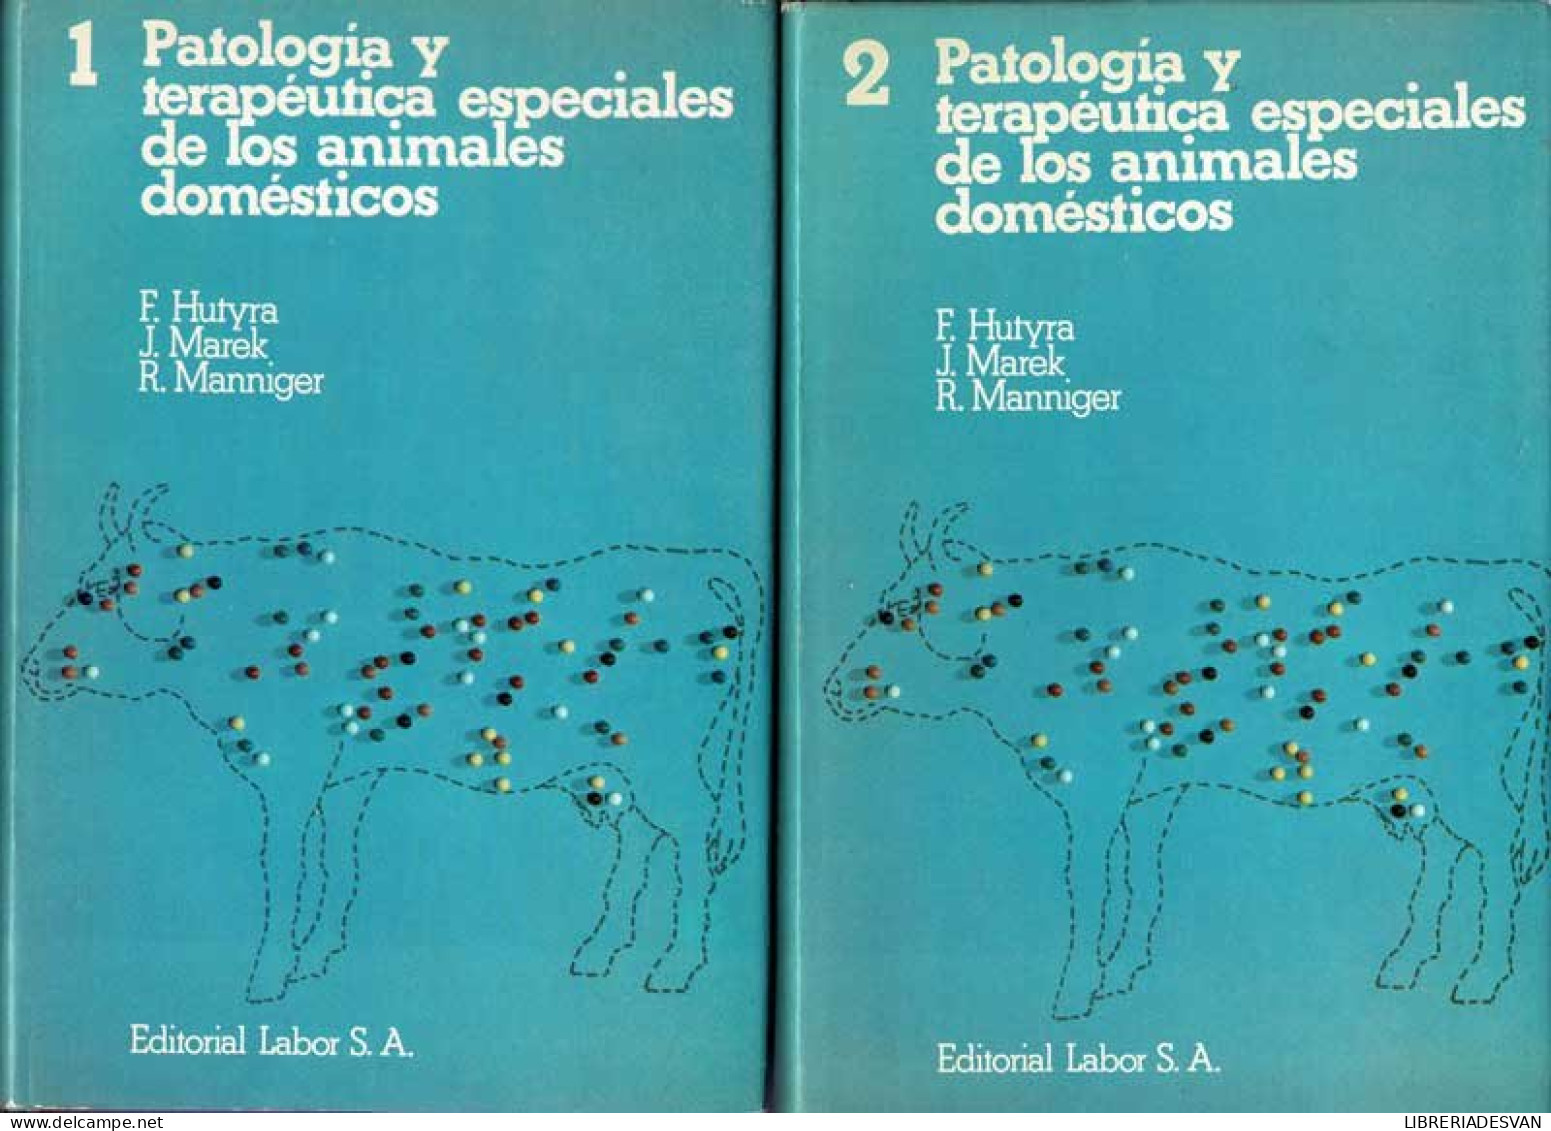 Patología Y Terapéutica Especiales De Los Animales Domésticos. 2 Volúmenes - F. Hutyra, J. Marek, R. Manniger - Práctico